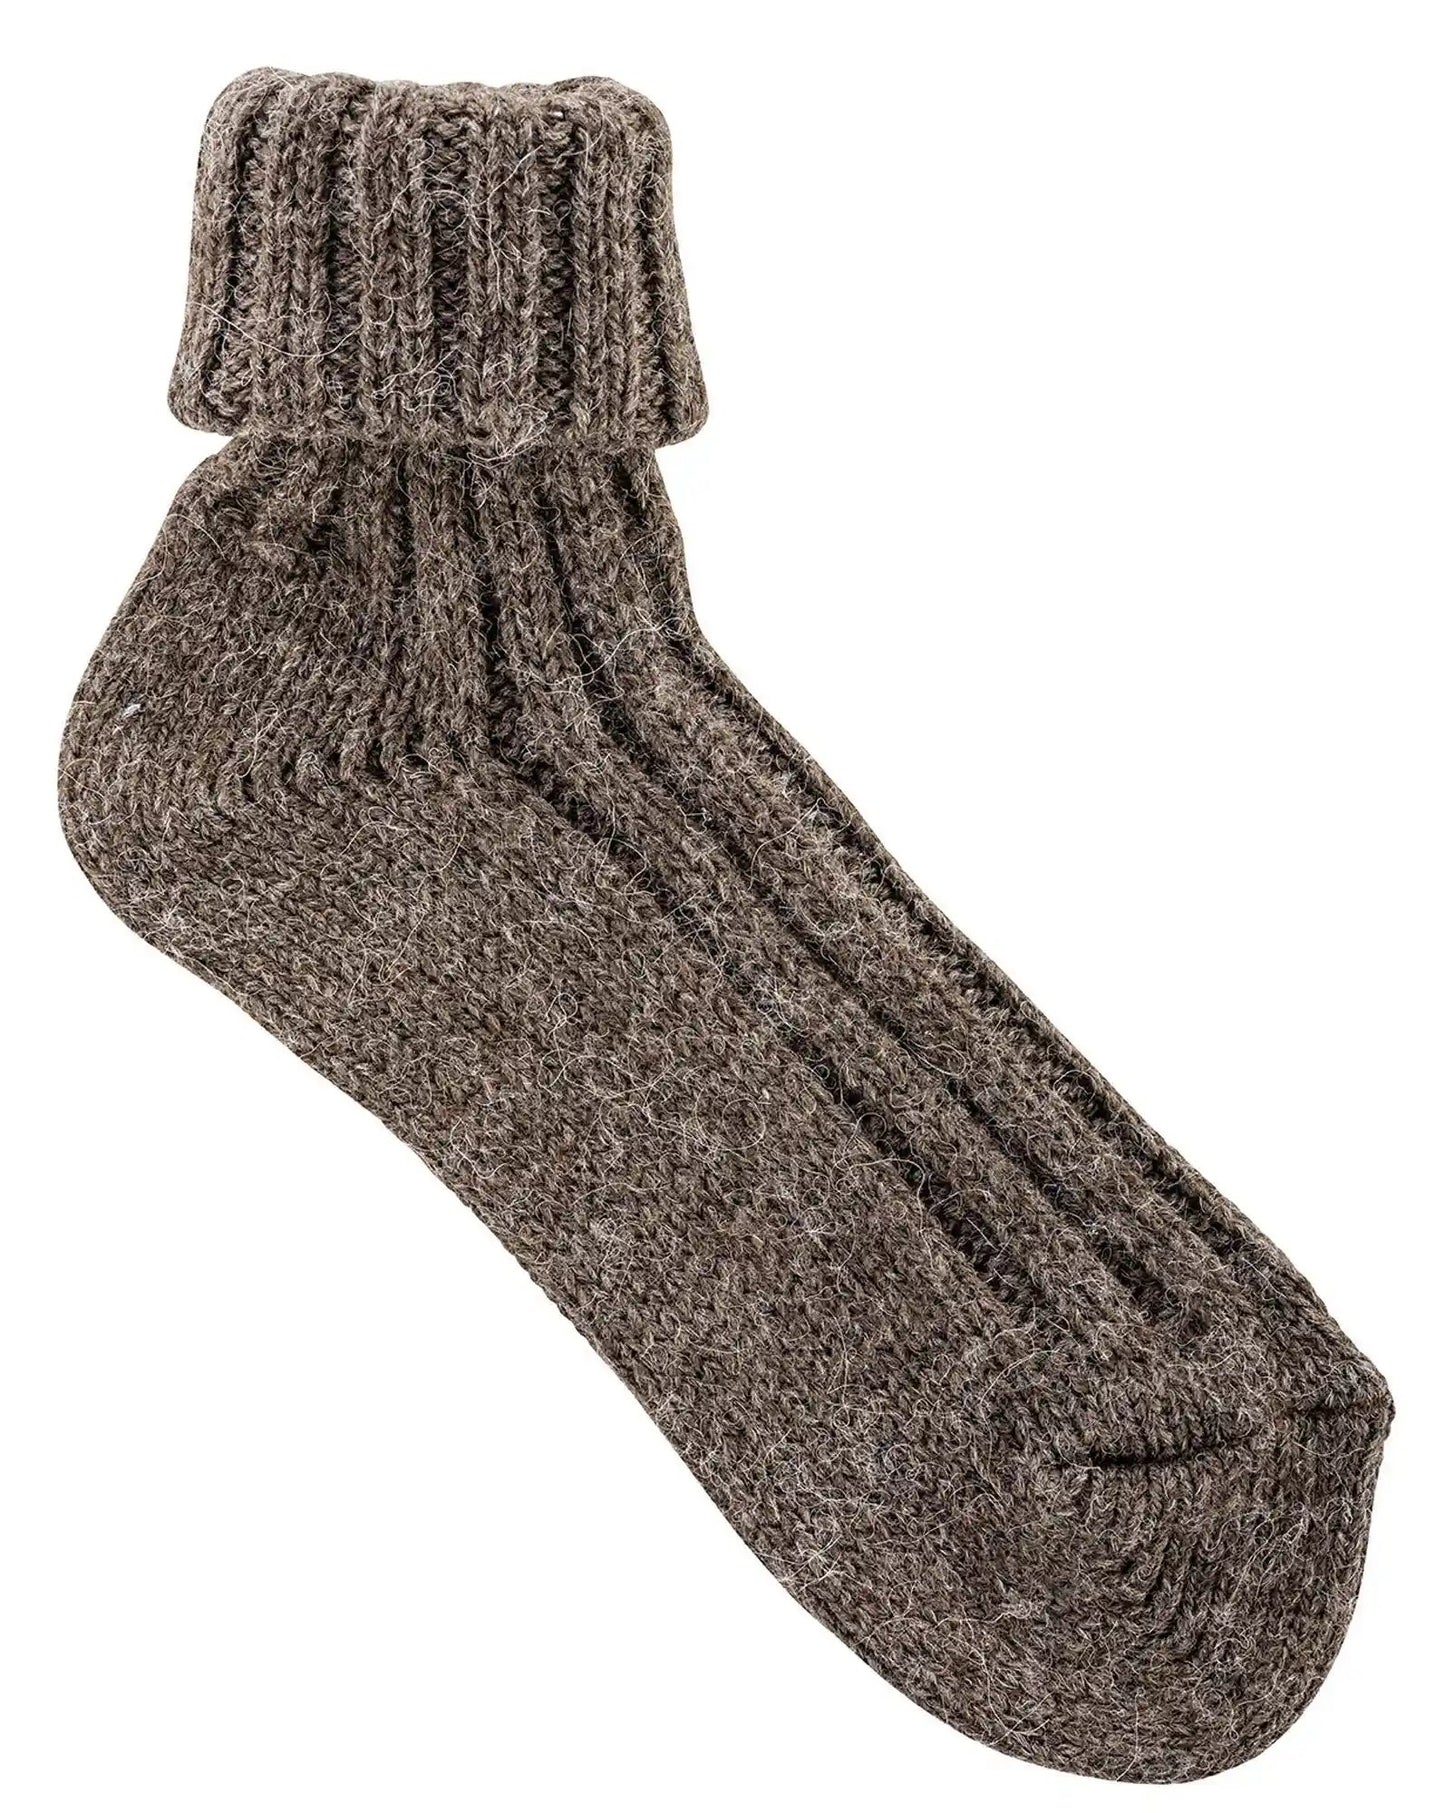 2 o 4 pares de calcetines tipo sobre suave con lana de oveja y alpaca para hombre y mujer